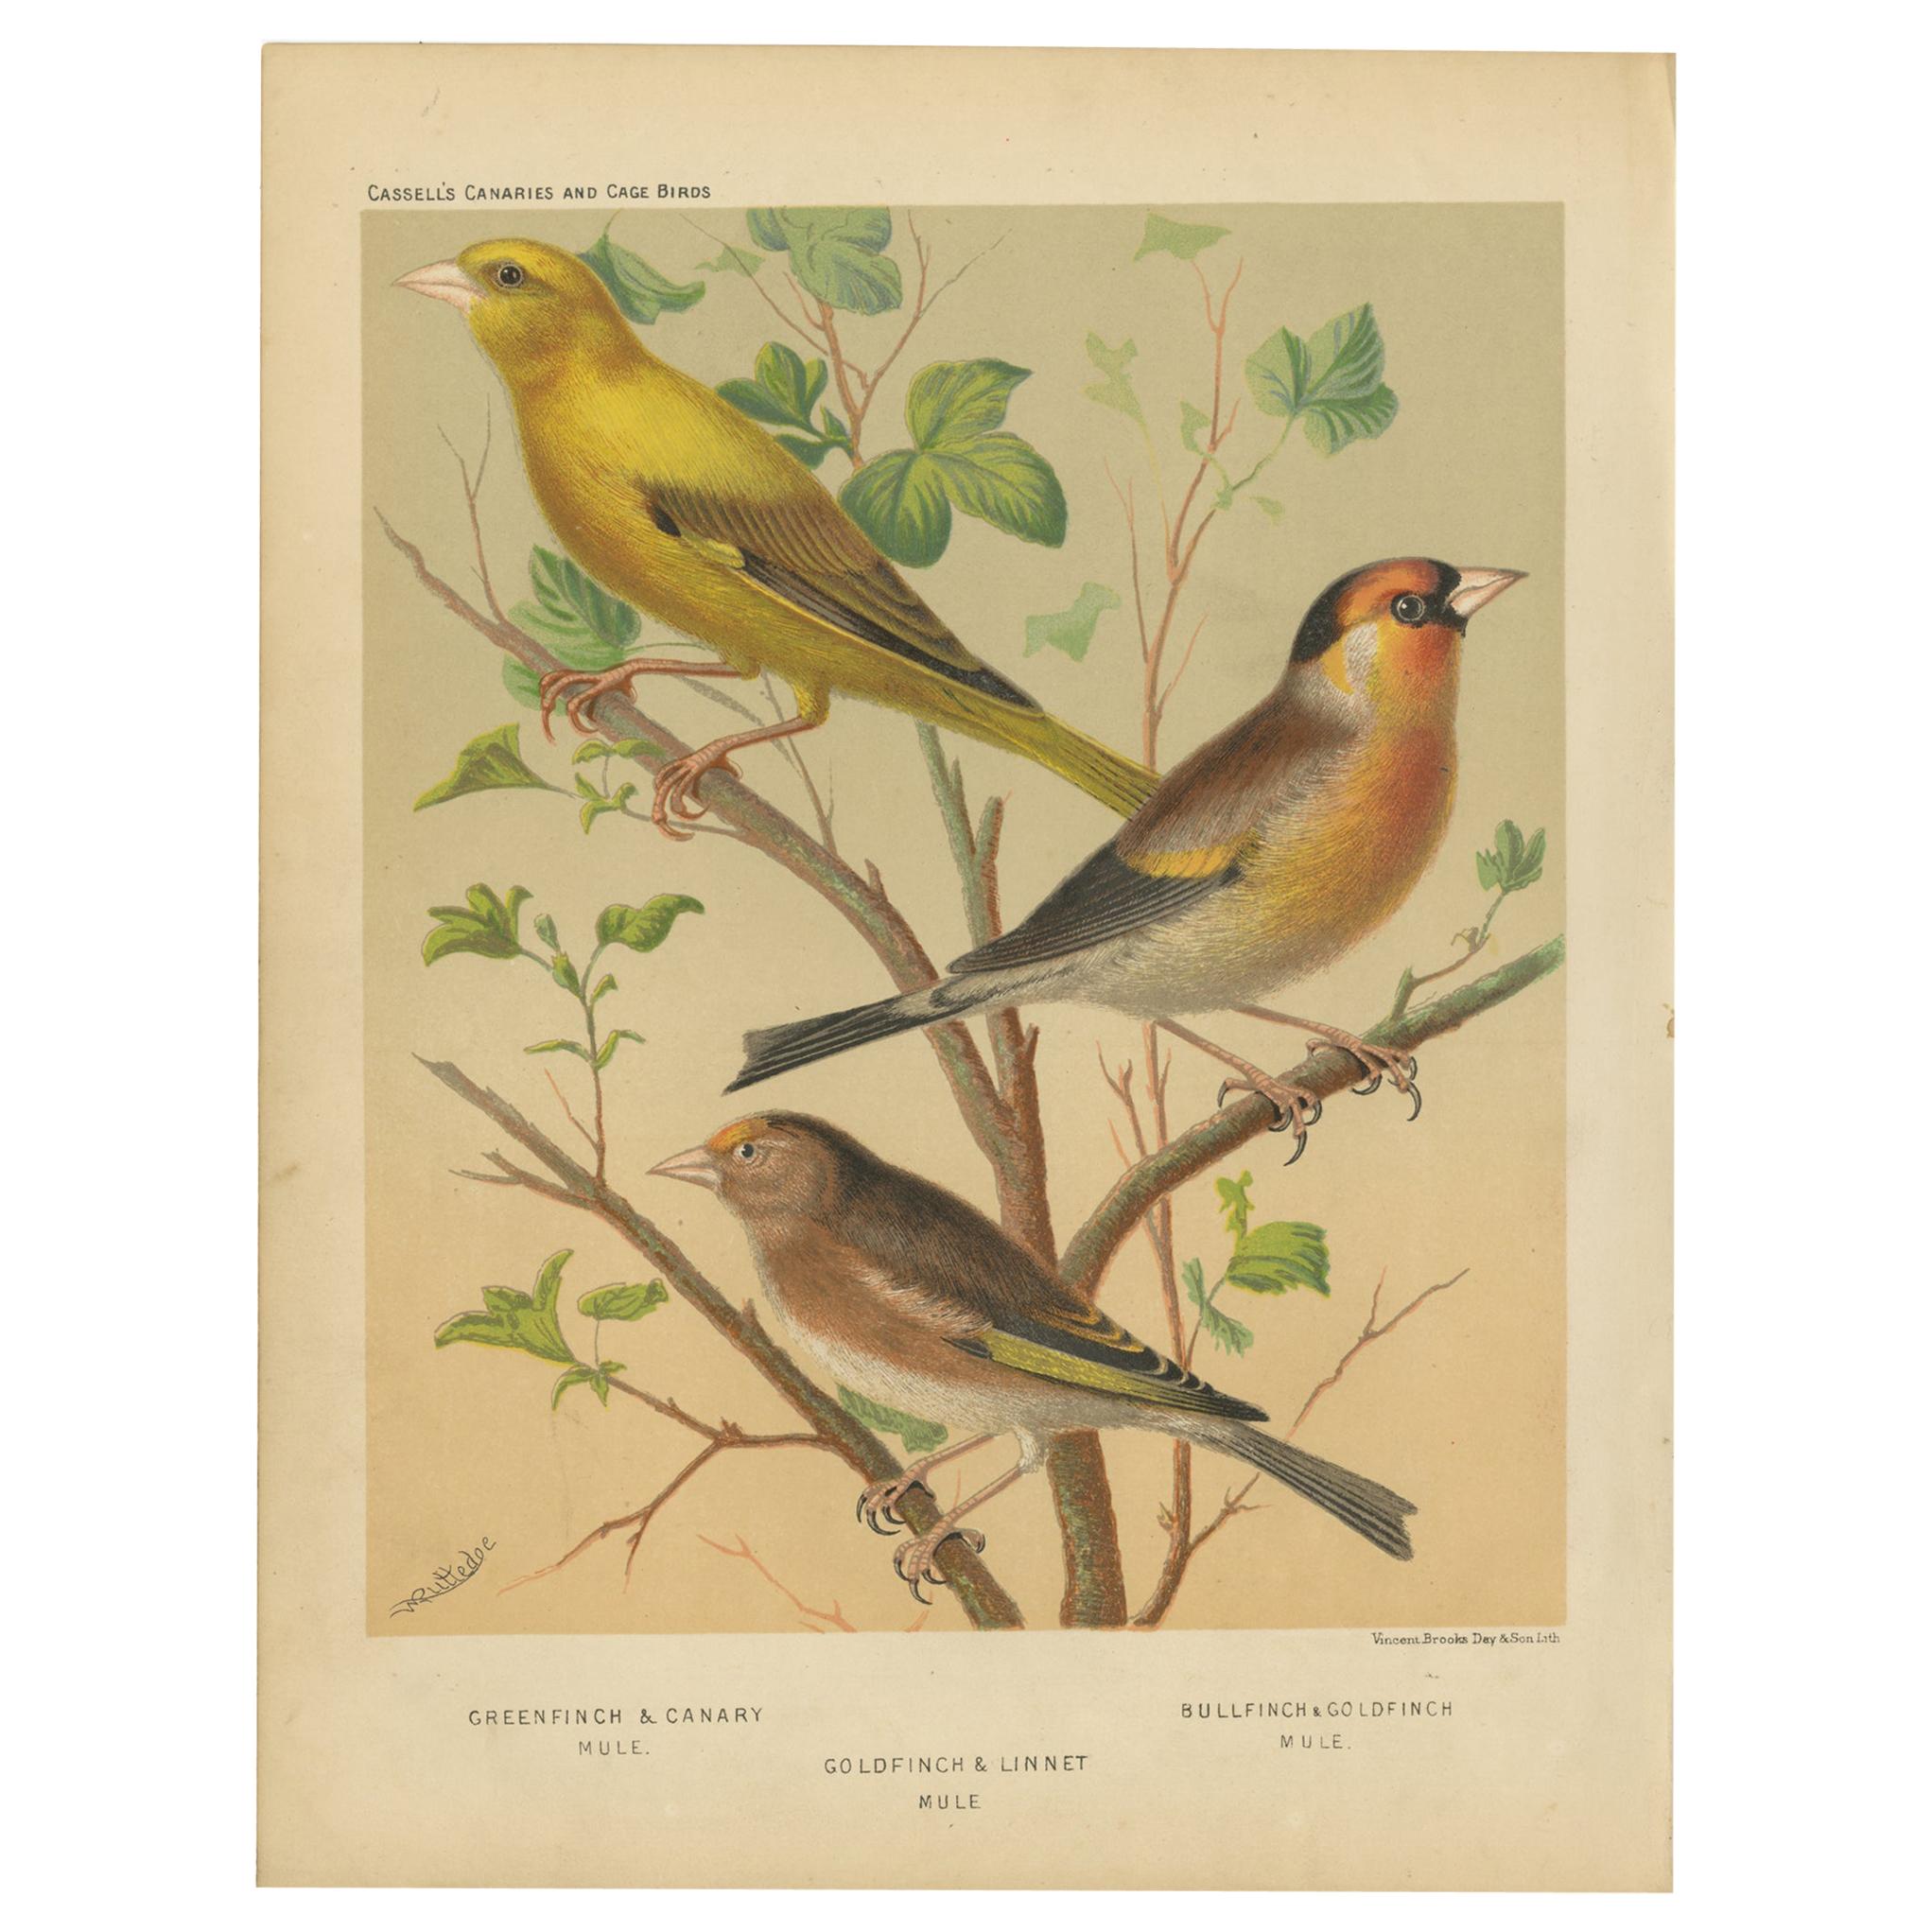 Antiker Vogeldruck aus Greenfinch & Canary Pantoletten, Goldfinch & Linnet und anderen